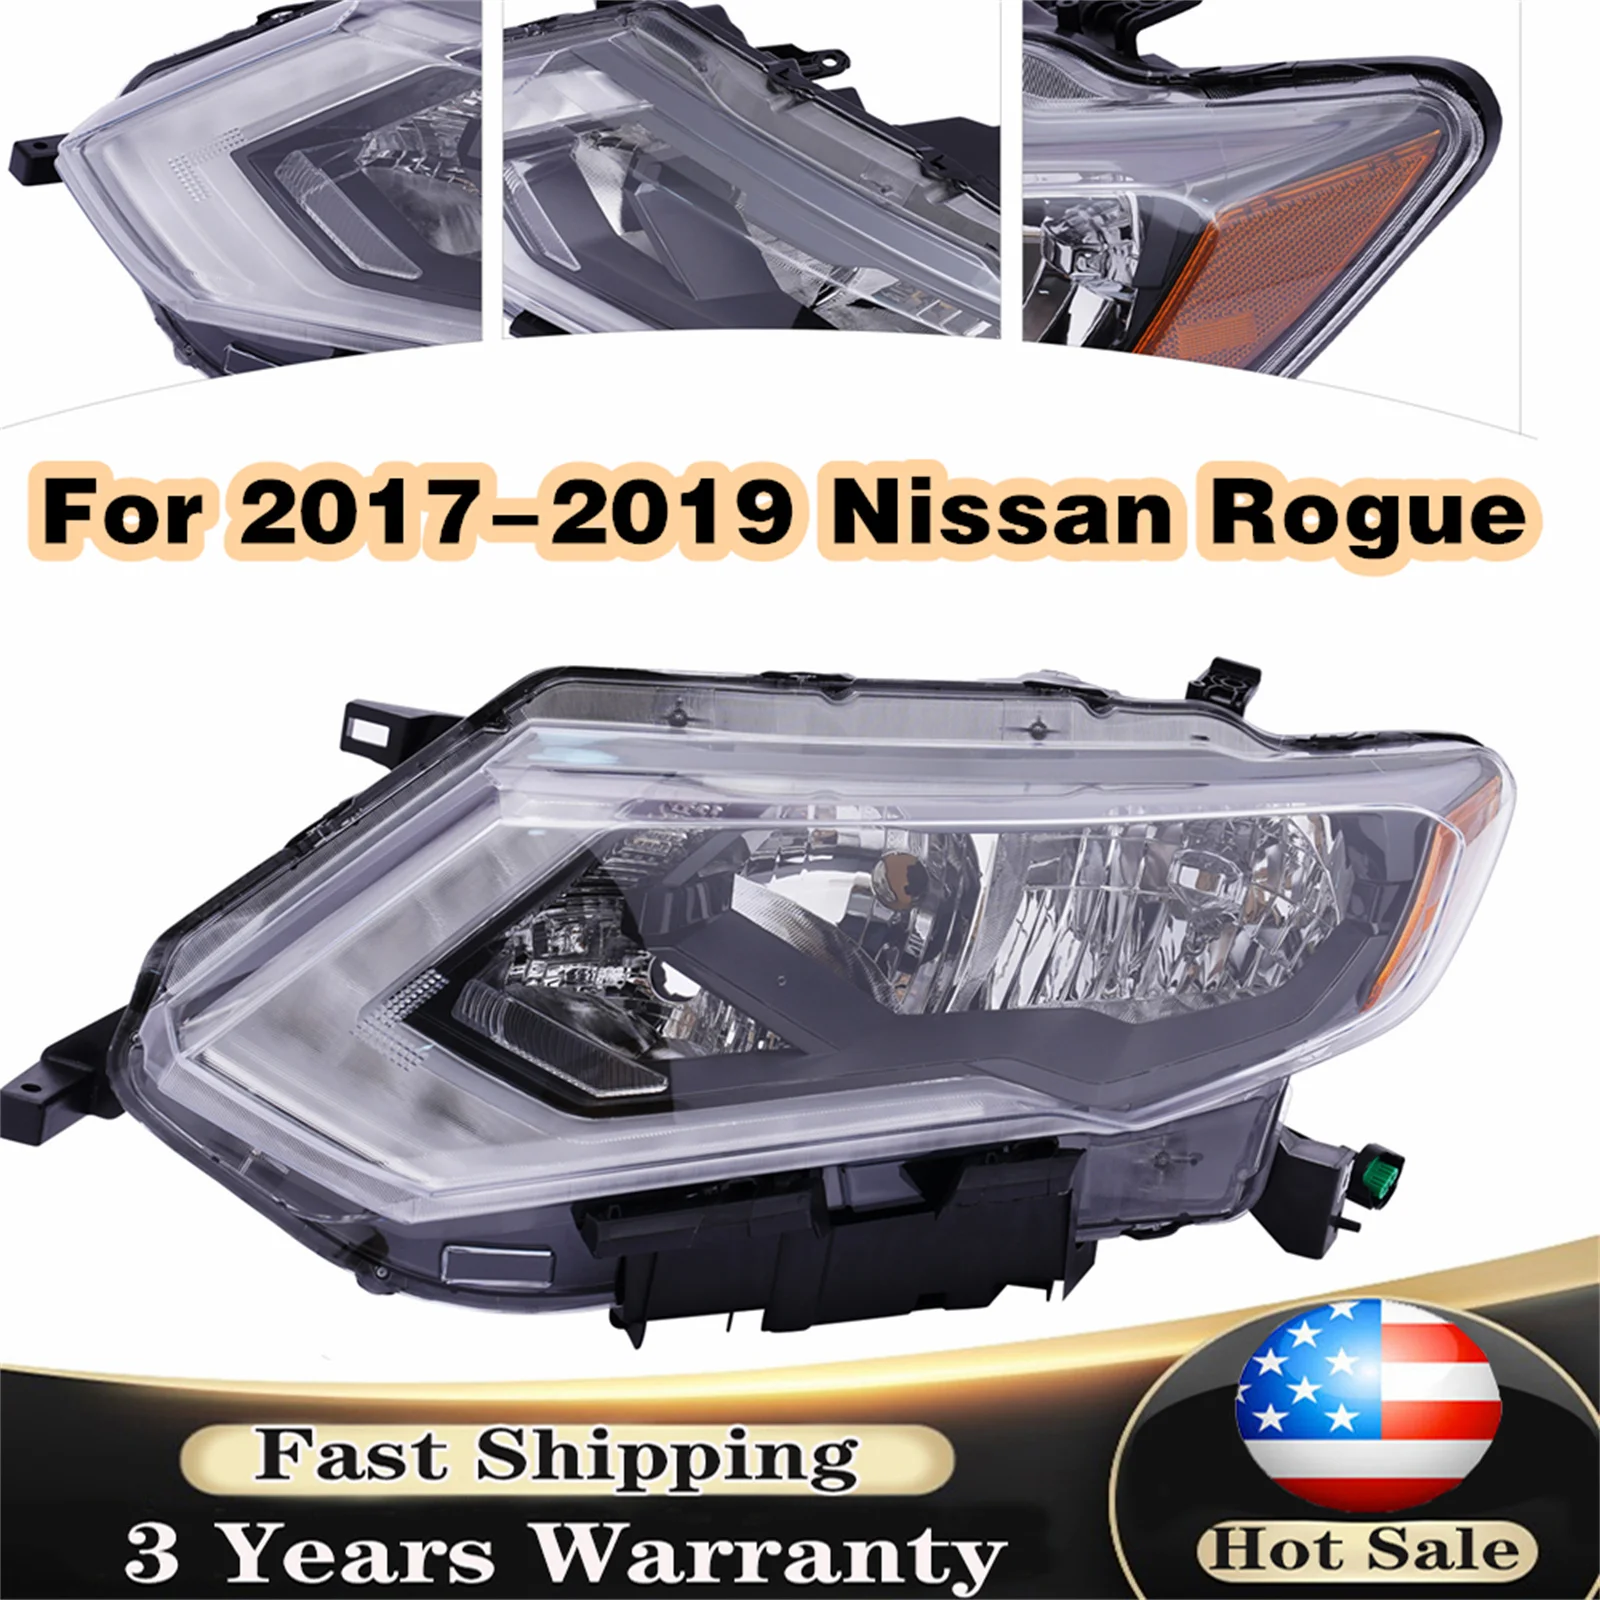 

Галогенные фары, аксессуары для Nissan Rogue Sport 2020-2021, пара/левая/правая боковые фары